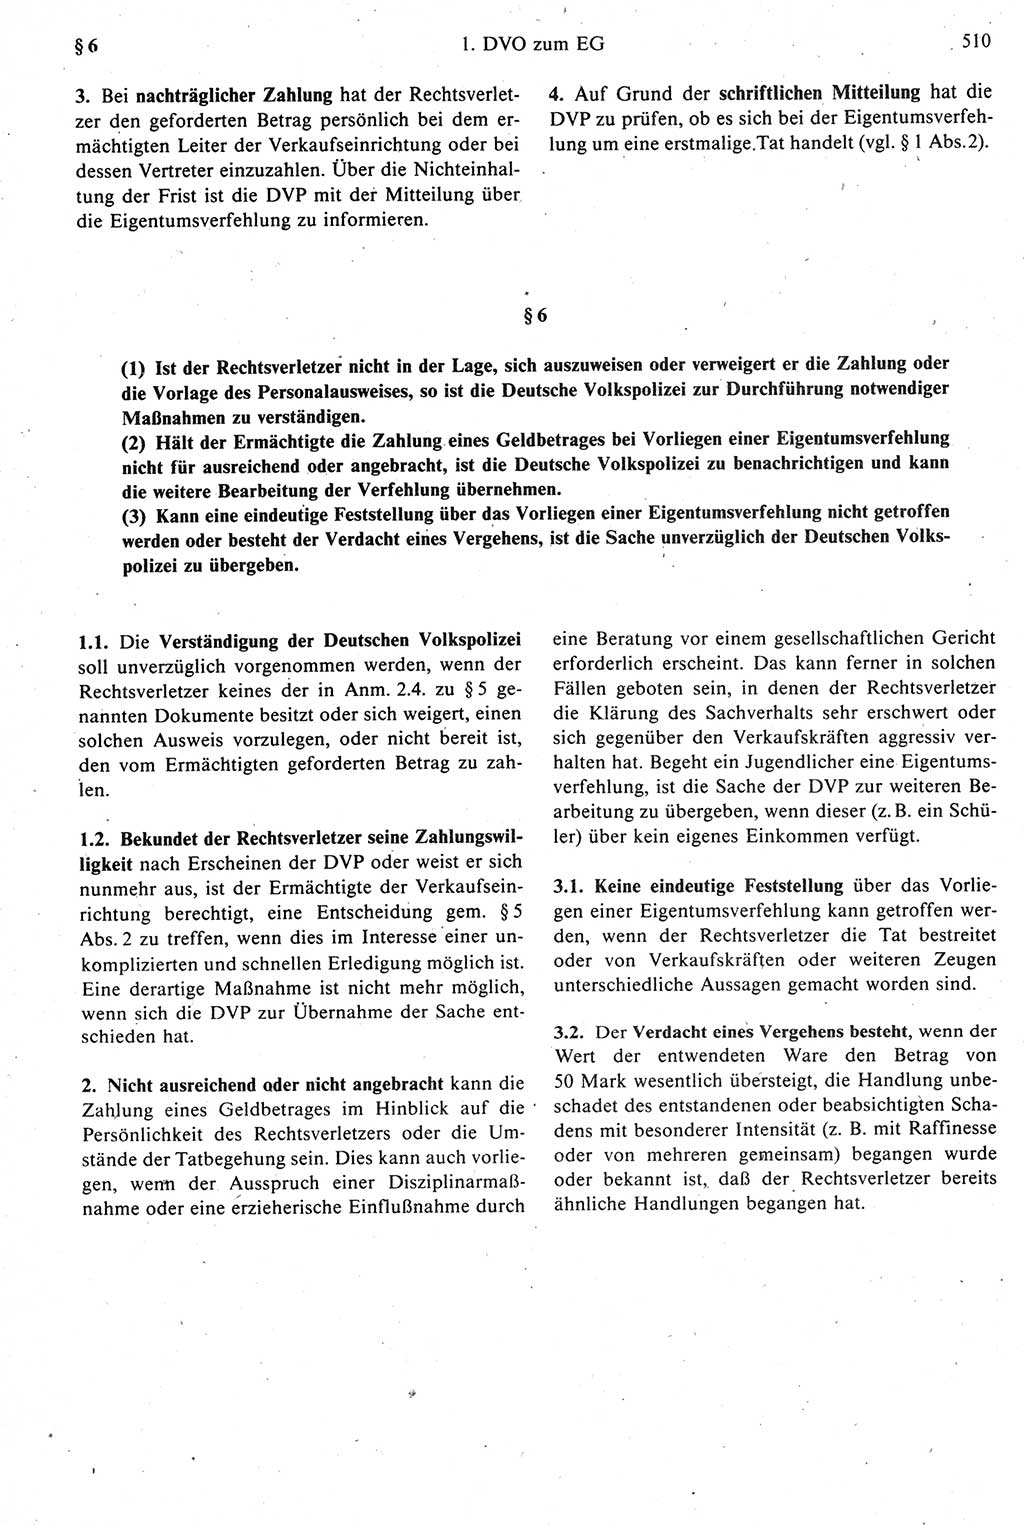 Strafprozeßrecht der DDR [Deutsche Demokratische Republik], Kommentar zur Strafprozeßordnung (StPO) 1987, Seite 510 (Strafprozeßr. DDR Komm. StPO 1987, S. 510)